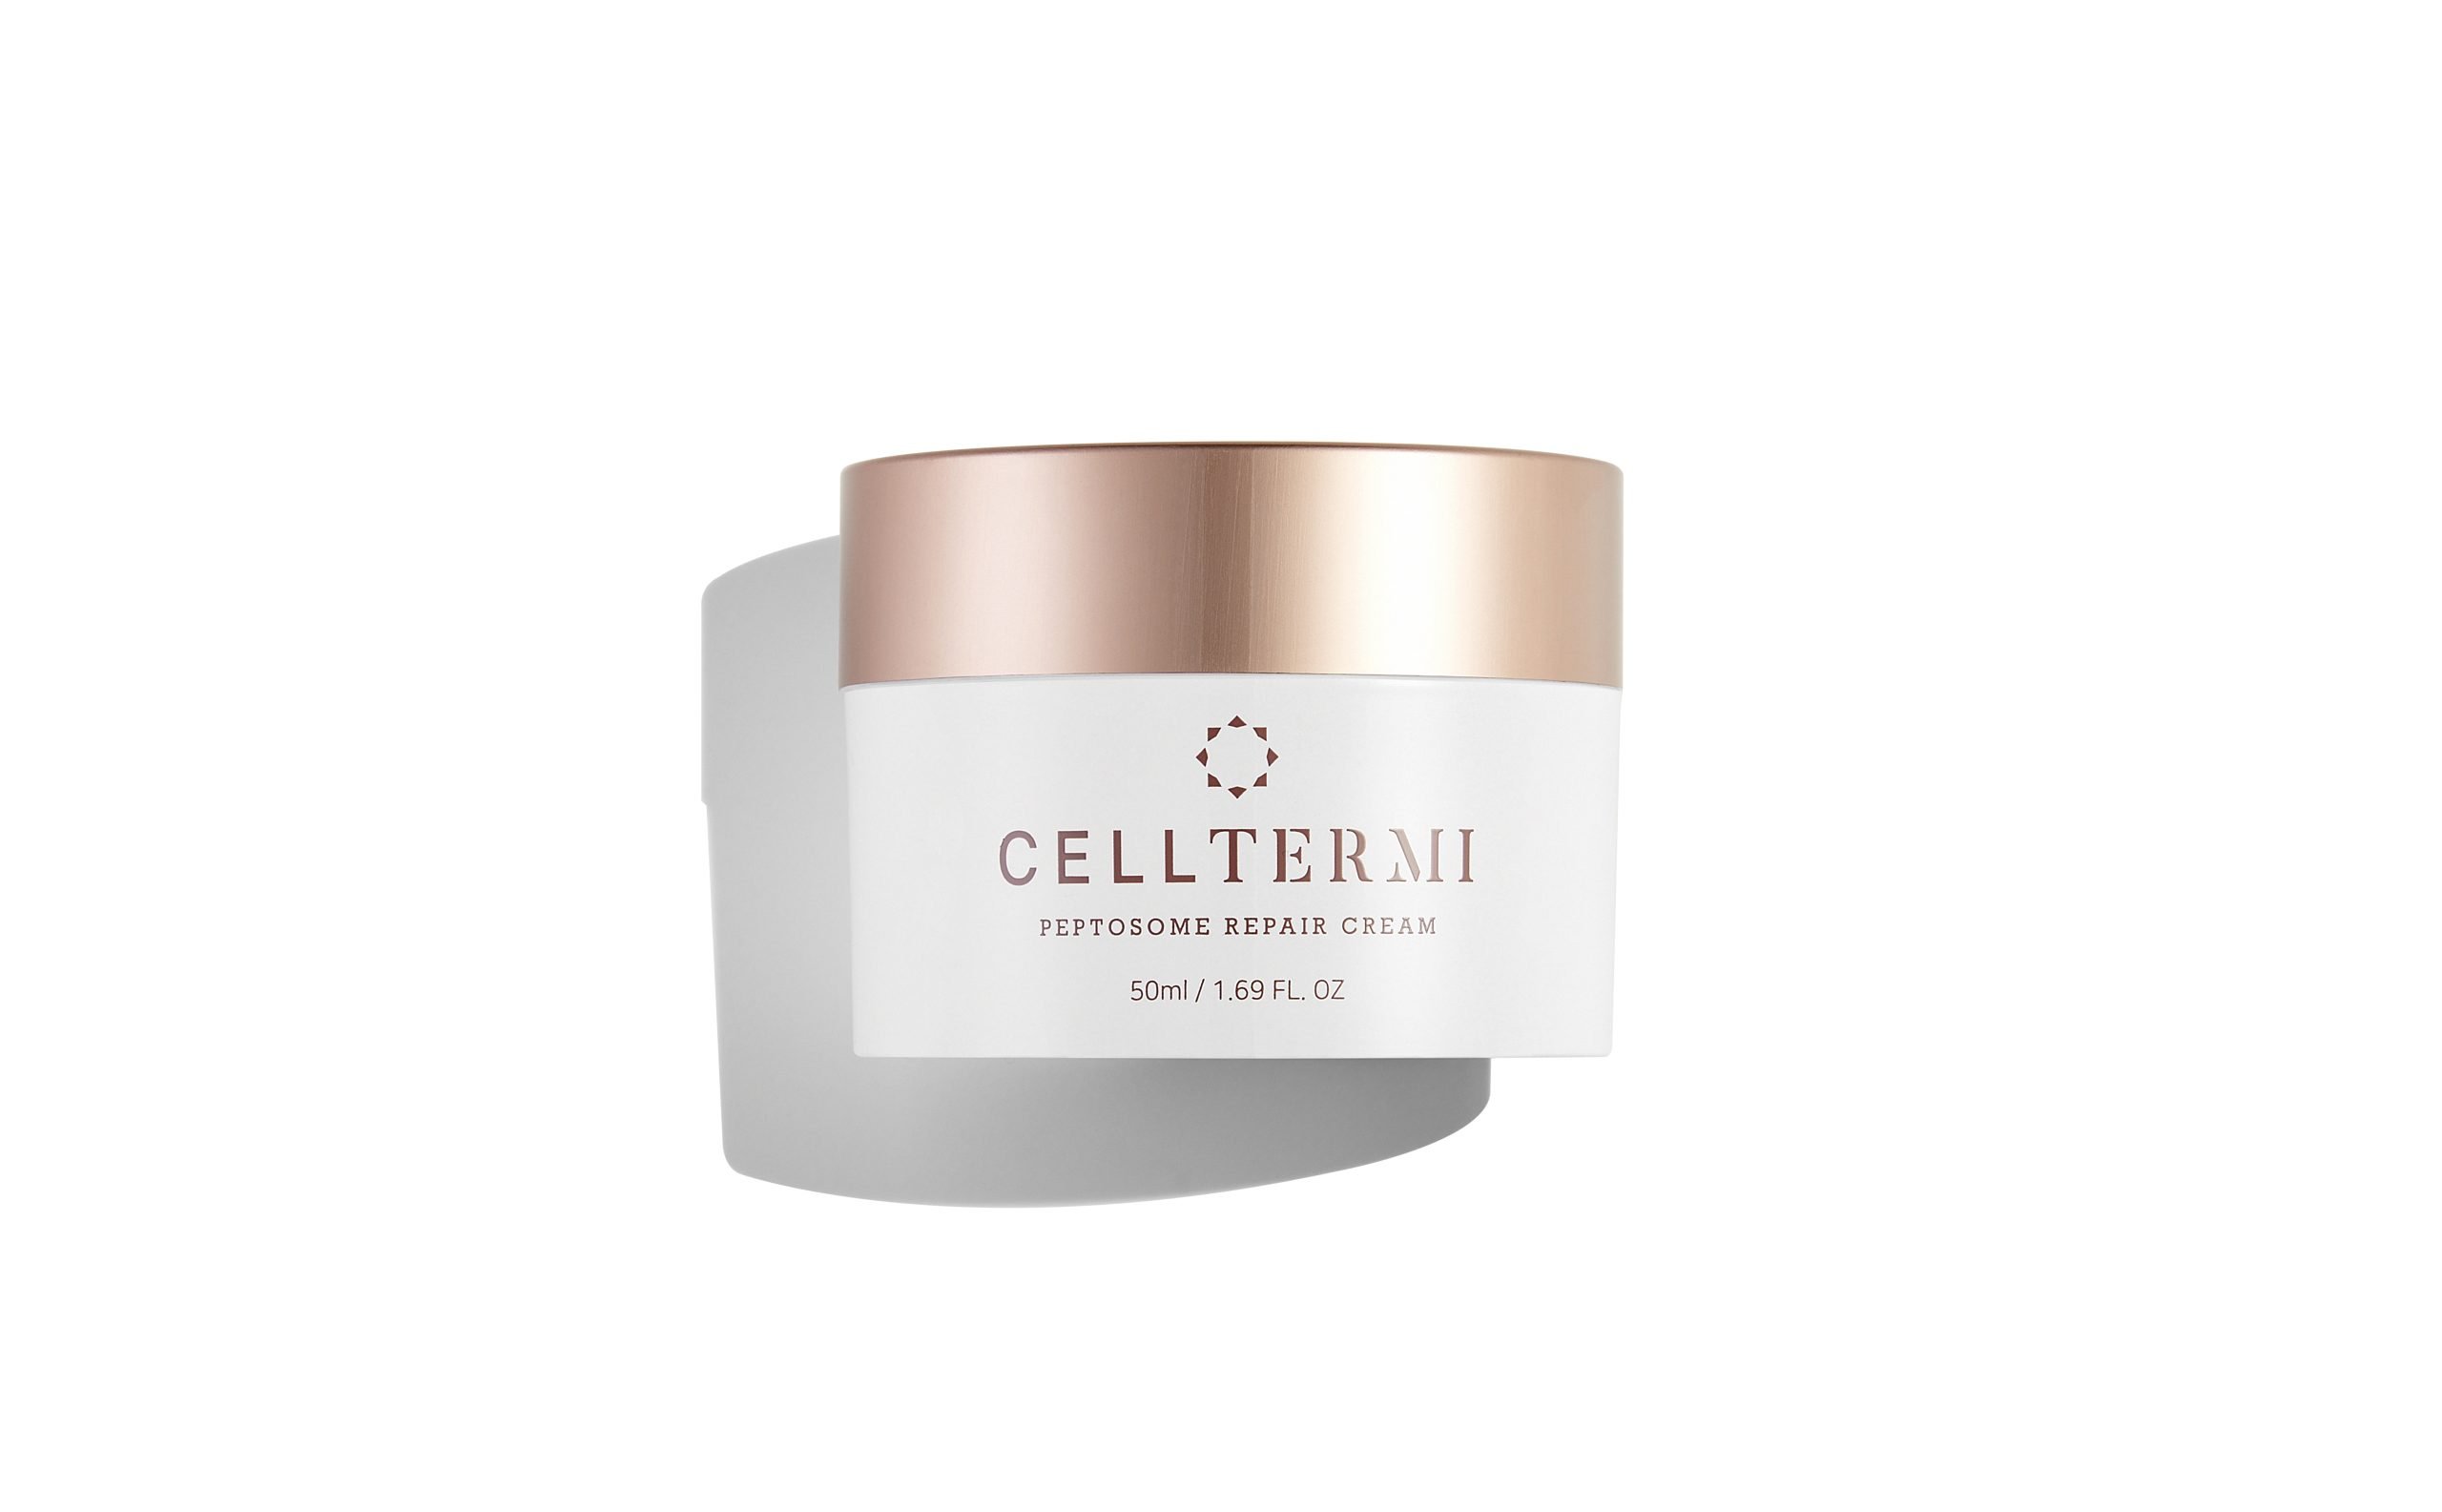 Celltermi Peptosome Repair Essence Cream 50ml